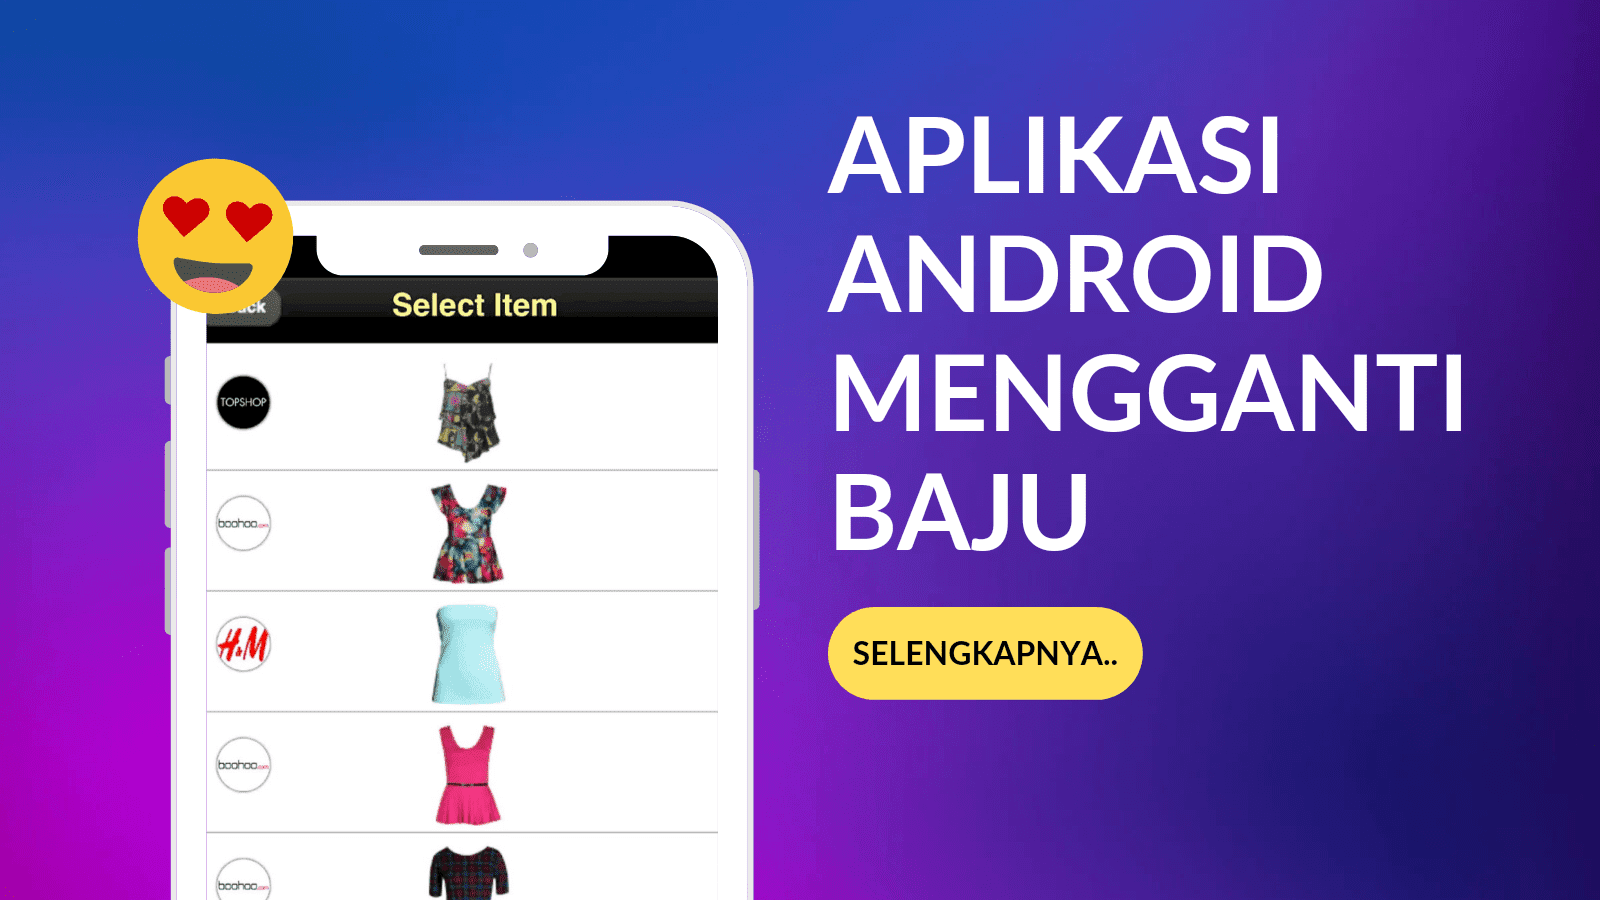 Aplikasi Android Mengganti Baju